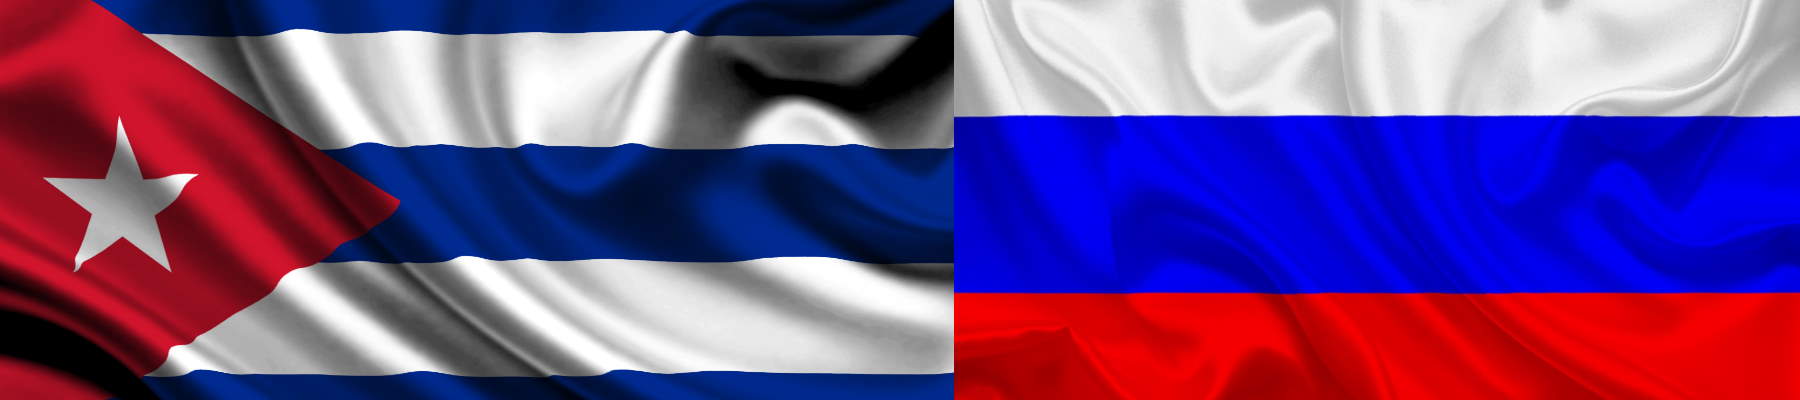 Envío de paquetes a Cuba desde Rusia